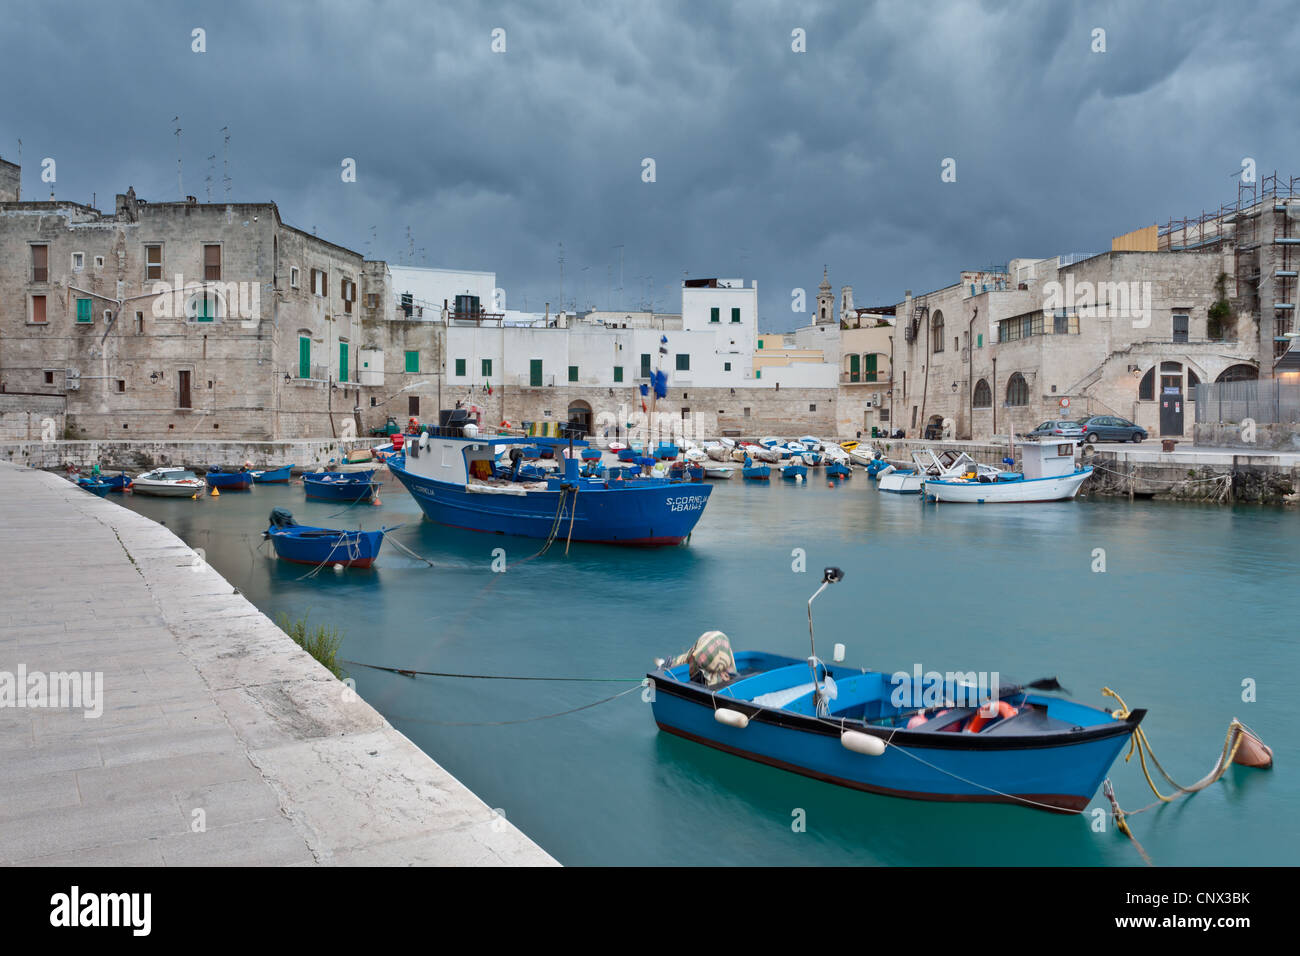 The old harbor in Monopoli, Puglia, Italy Stock Photo